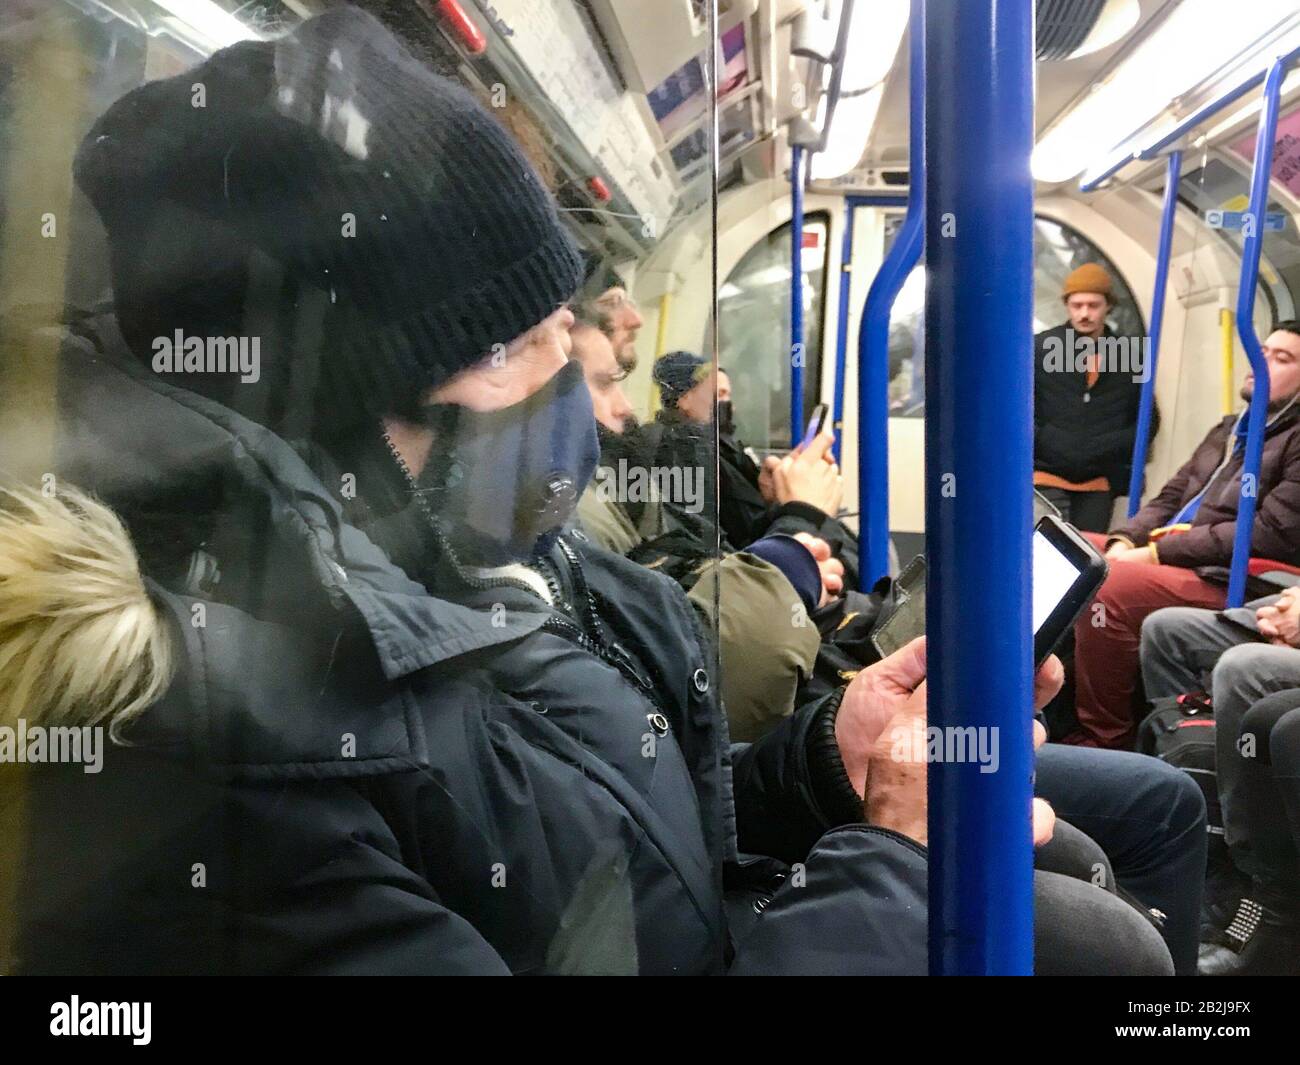 Ein Mann trägt eine Maske auf der Piccadilly-Linie der Underground, London. Premierminister Boris Johnson sagte, es sei "sehr wahrscheinlich", dass Großbritannien eine wachsende Anzahl von Coronavirus-Fällen sehen wird, betonte aber, dass "für die große Mehrheit der Menschen in diesem Land wir wie gewohnt über unser Geschäft gehen sollten". Stockfoto